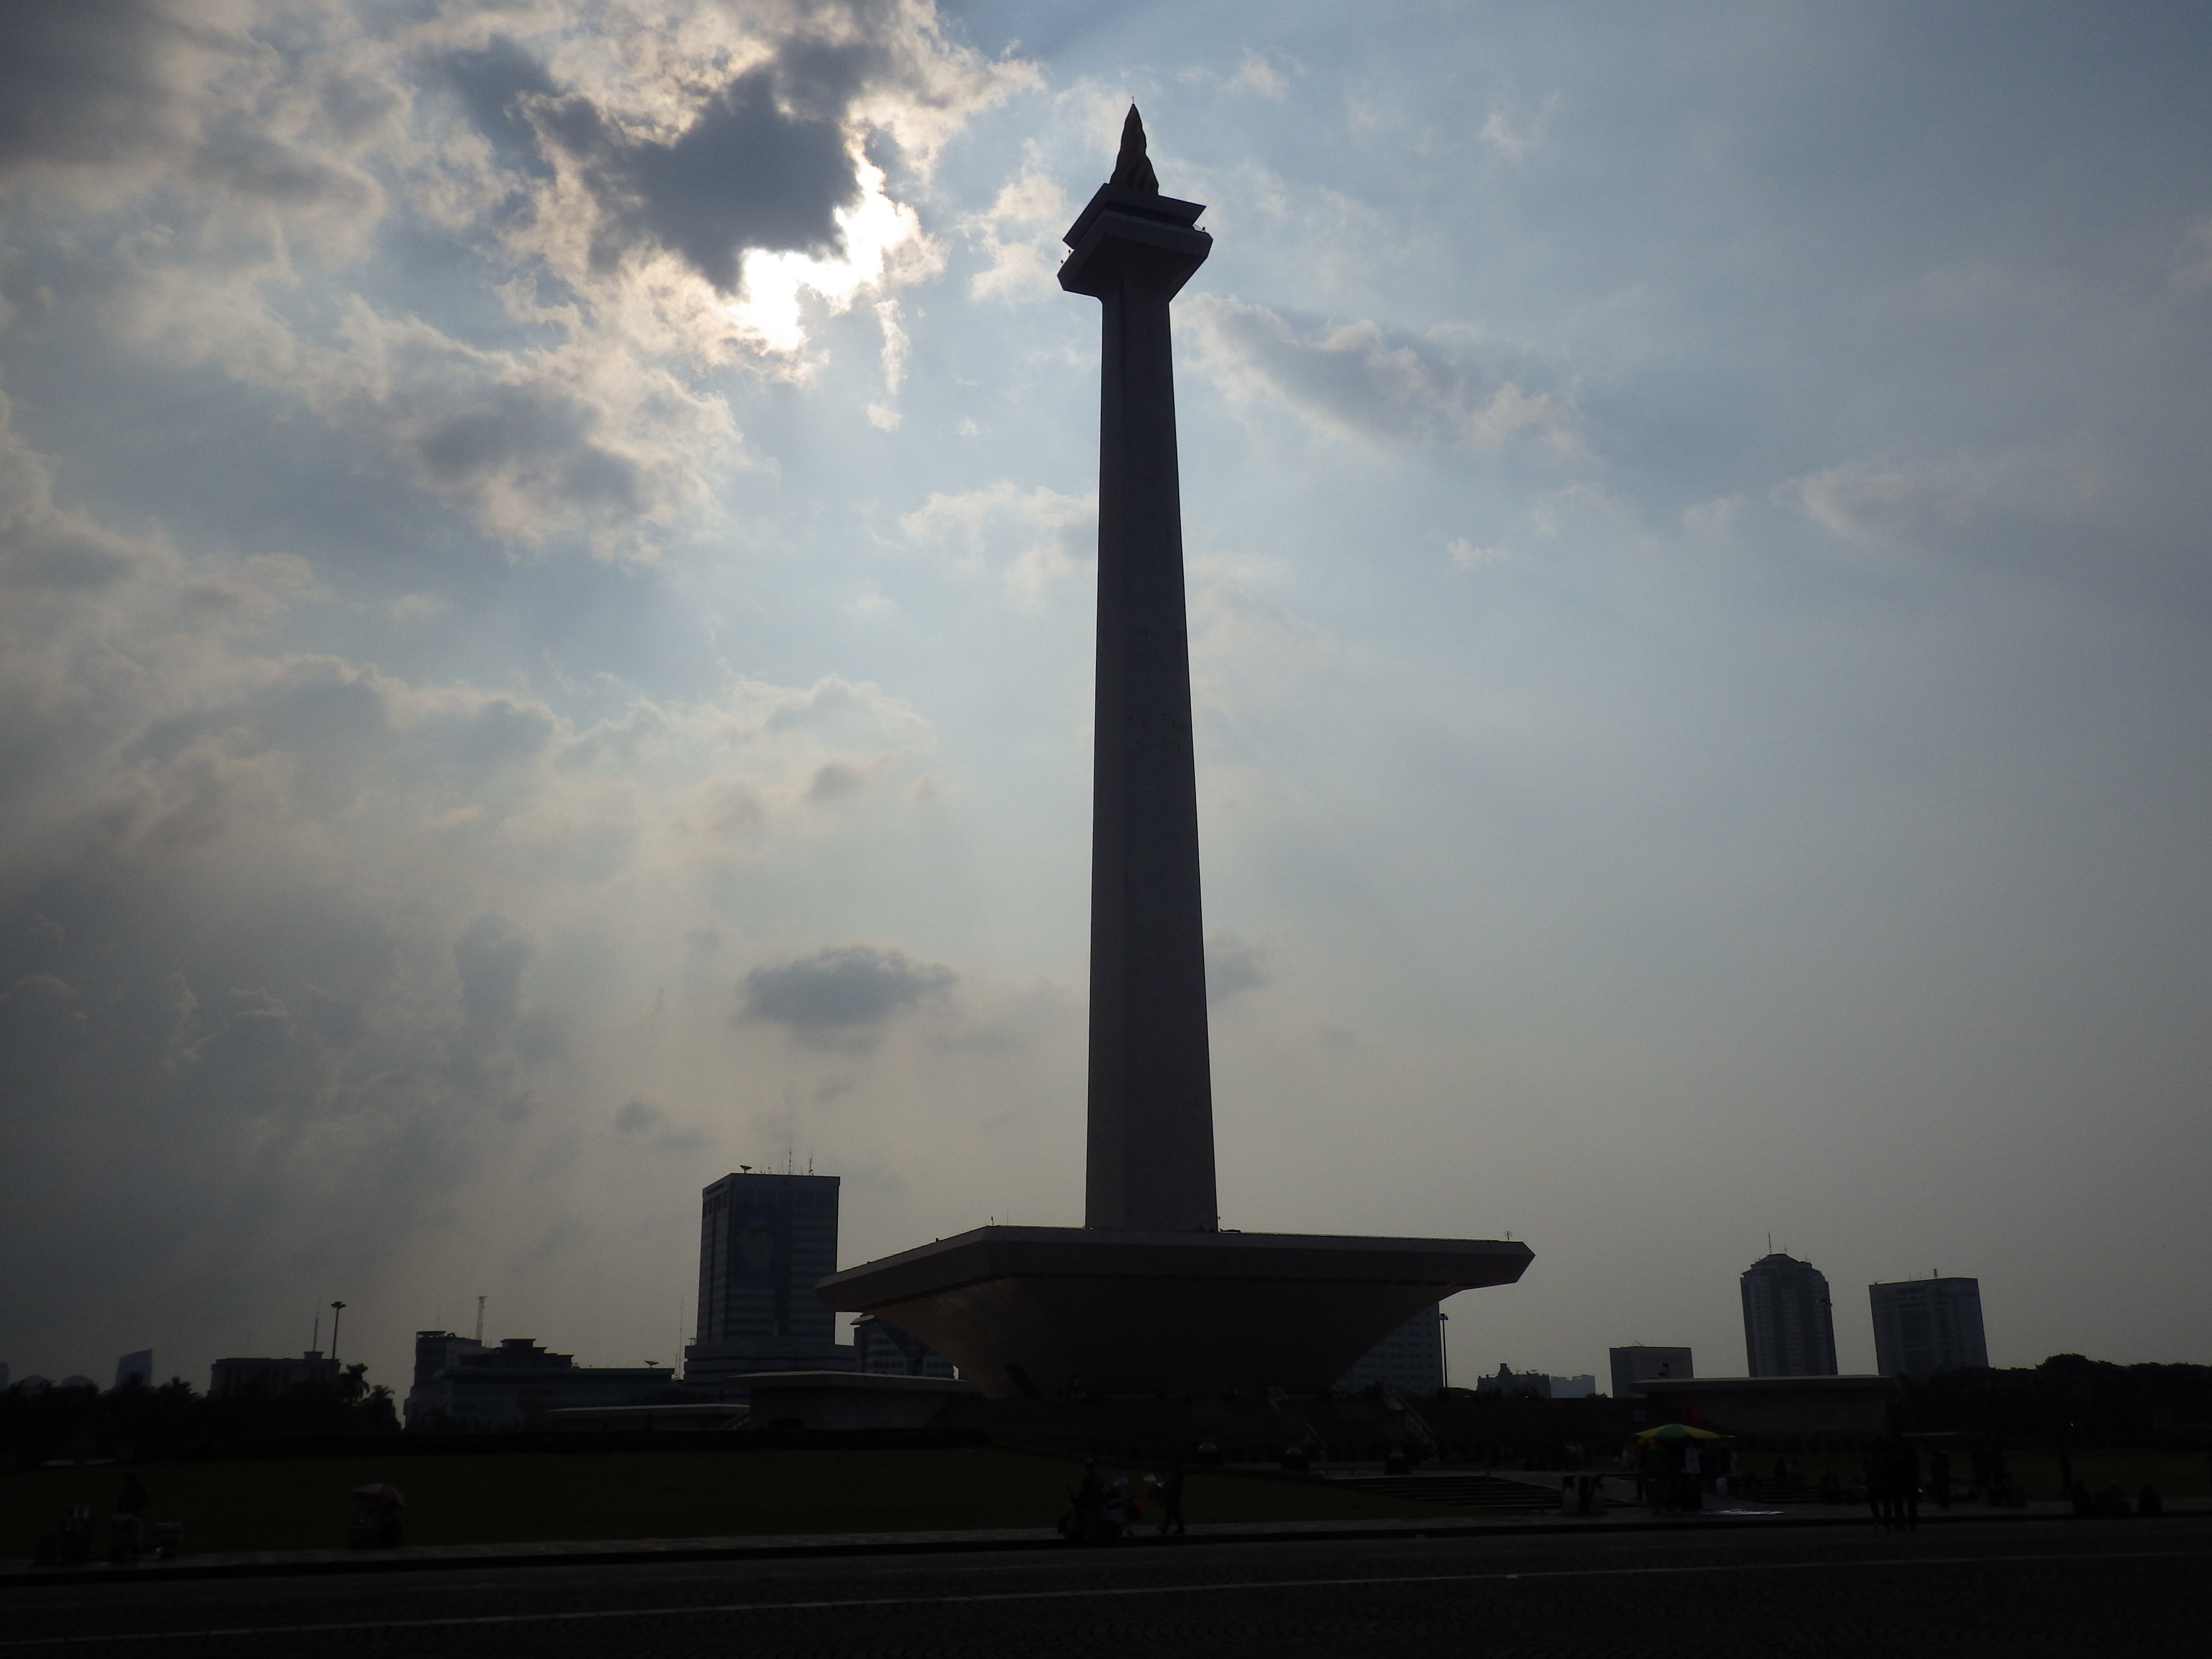  Jakarta  Jakarta  Java Indon sie Routard  com